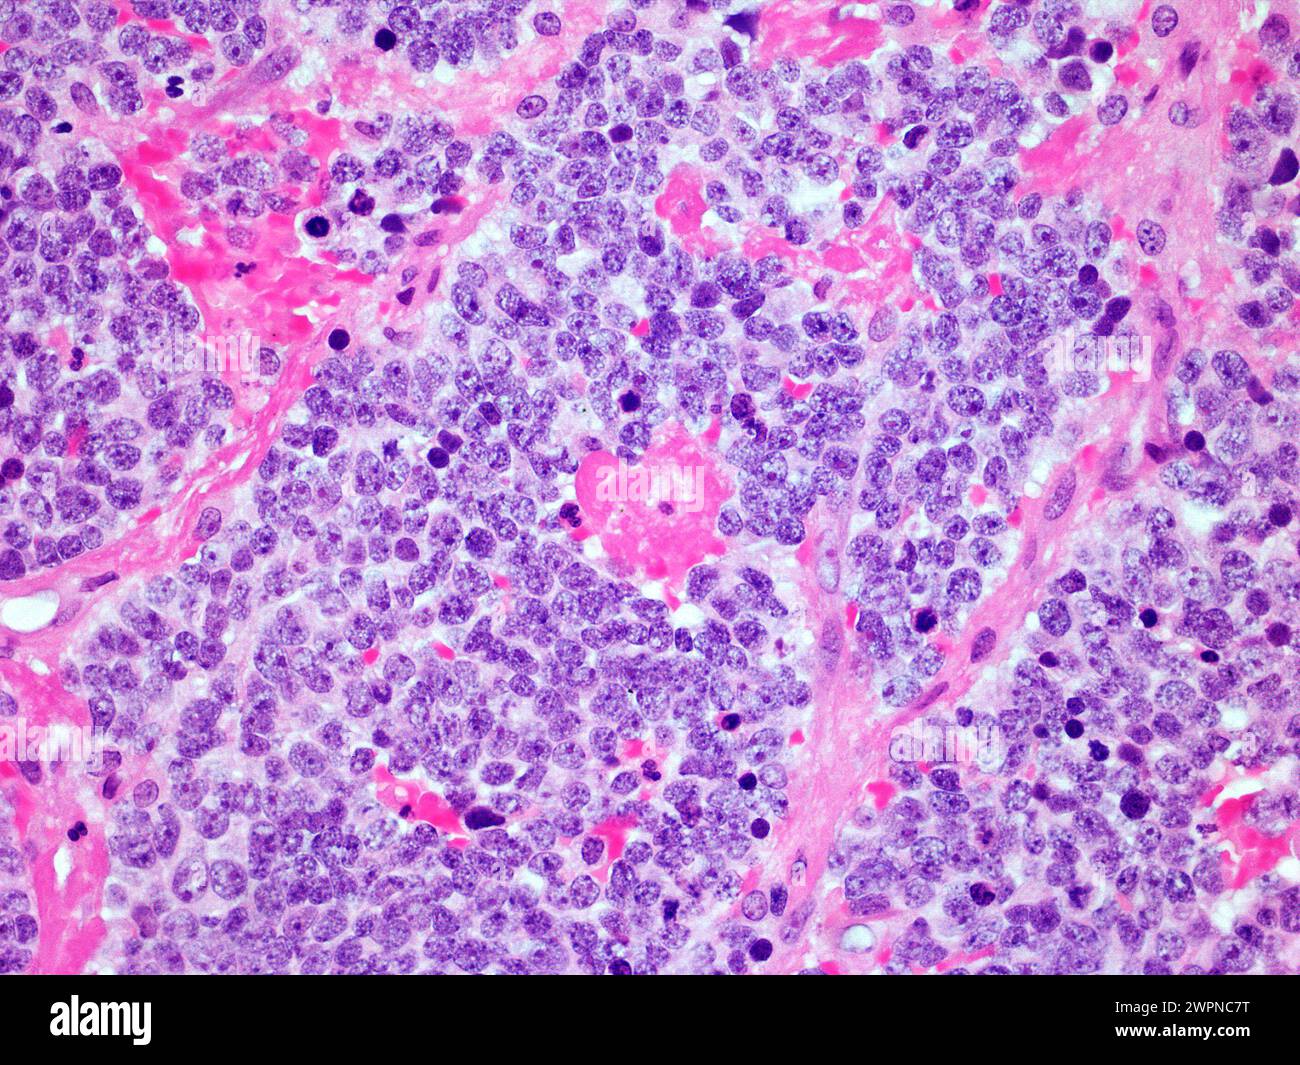 Image microscopique d'une tumeur maligne du neuroblastome de la glande surrénale vue à agrandissement 300x avec coloration à l'hématoxyline et à l'éosine Banque D'Images